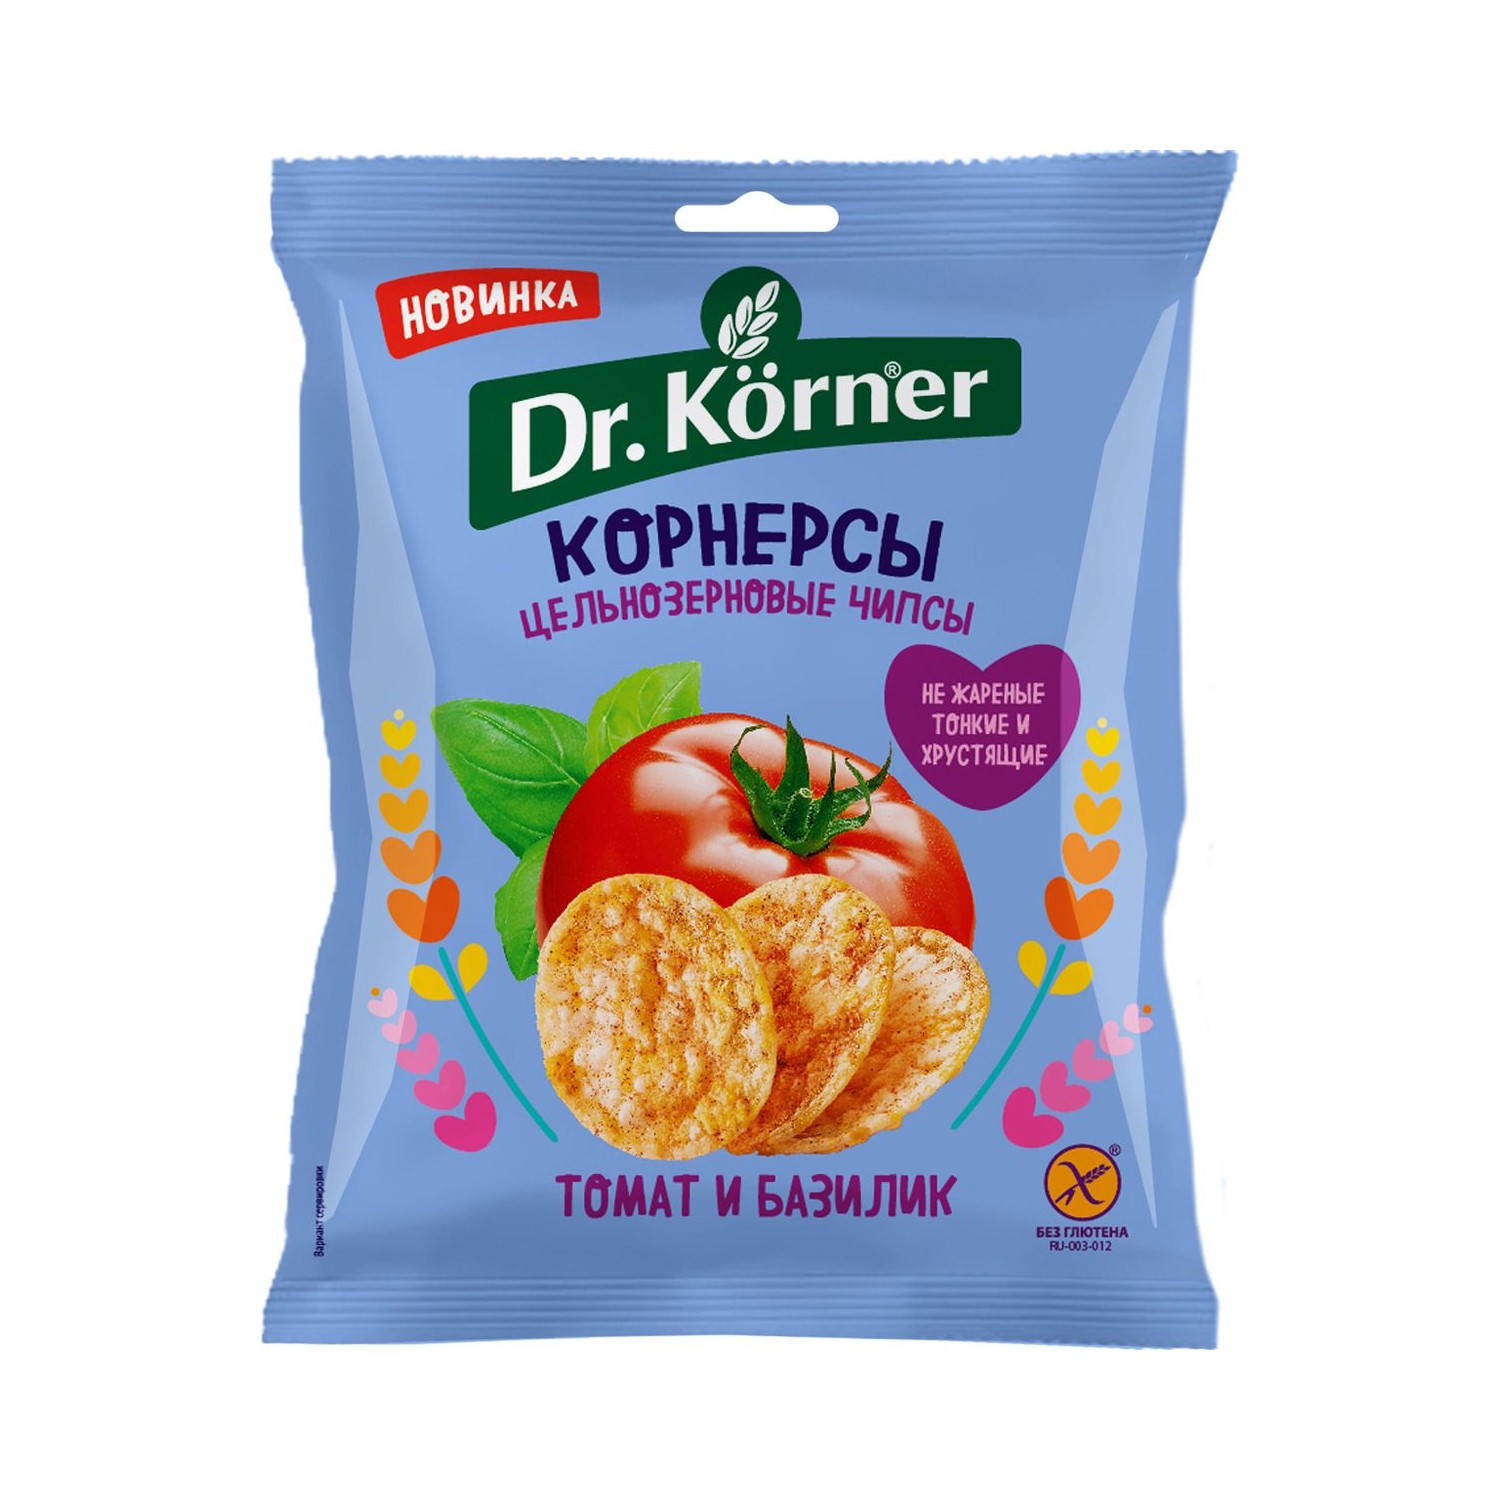 цена Чипсы Dr. Korner цельнозерновые кукурузно-рисовые с томатом и базиликом 50 г